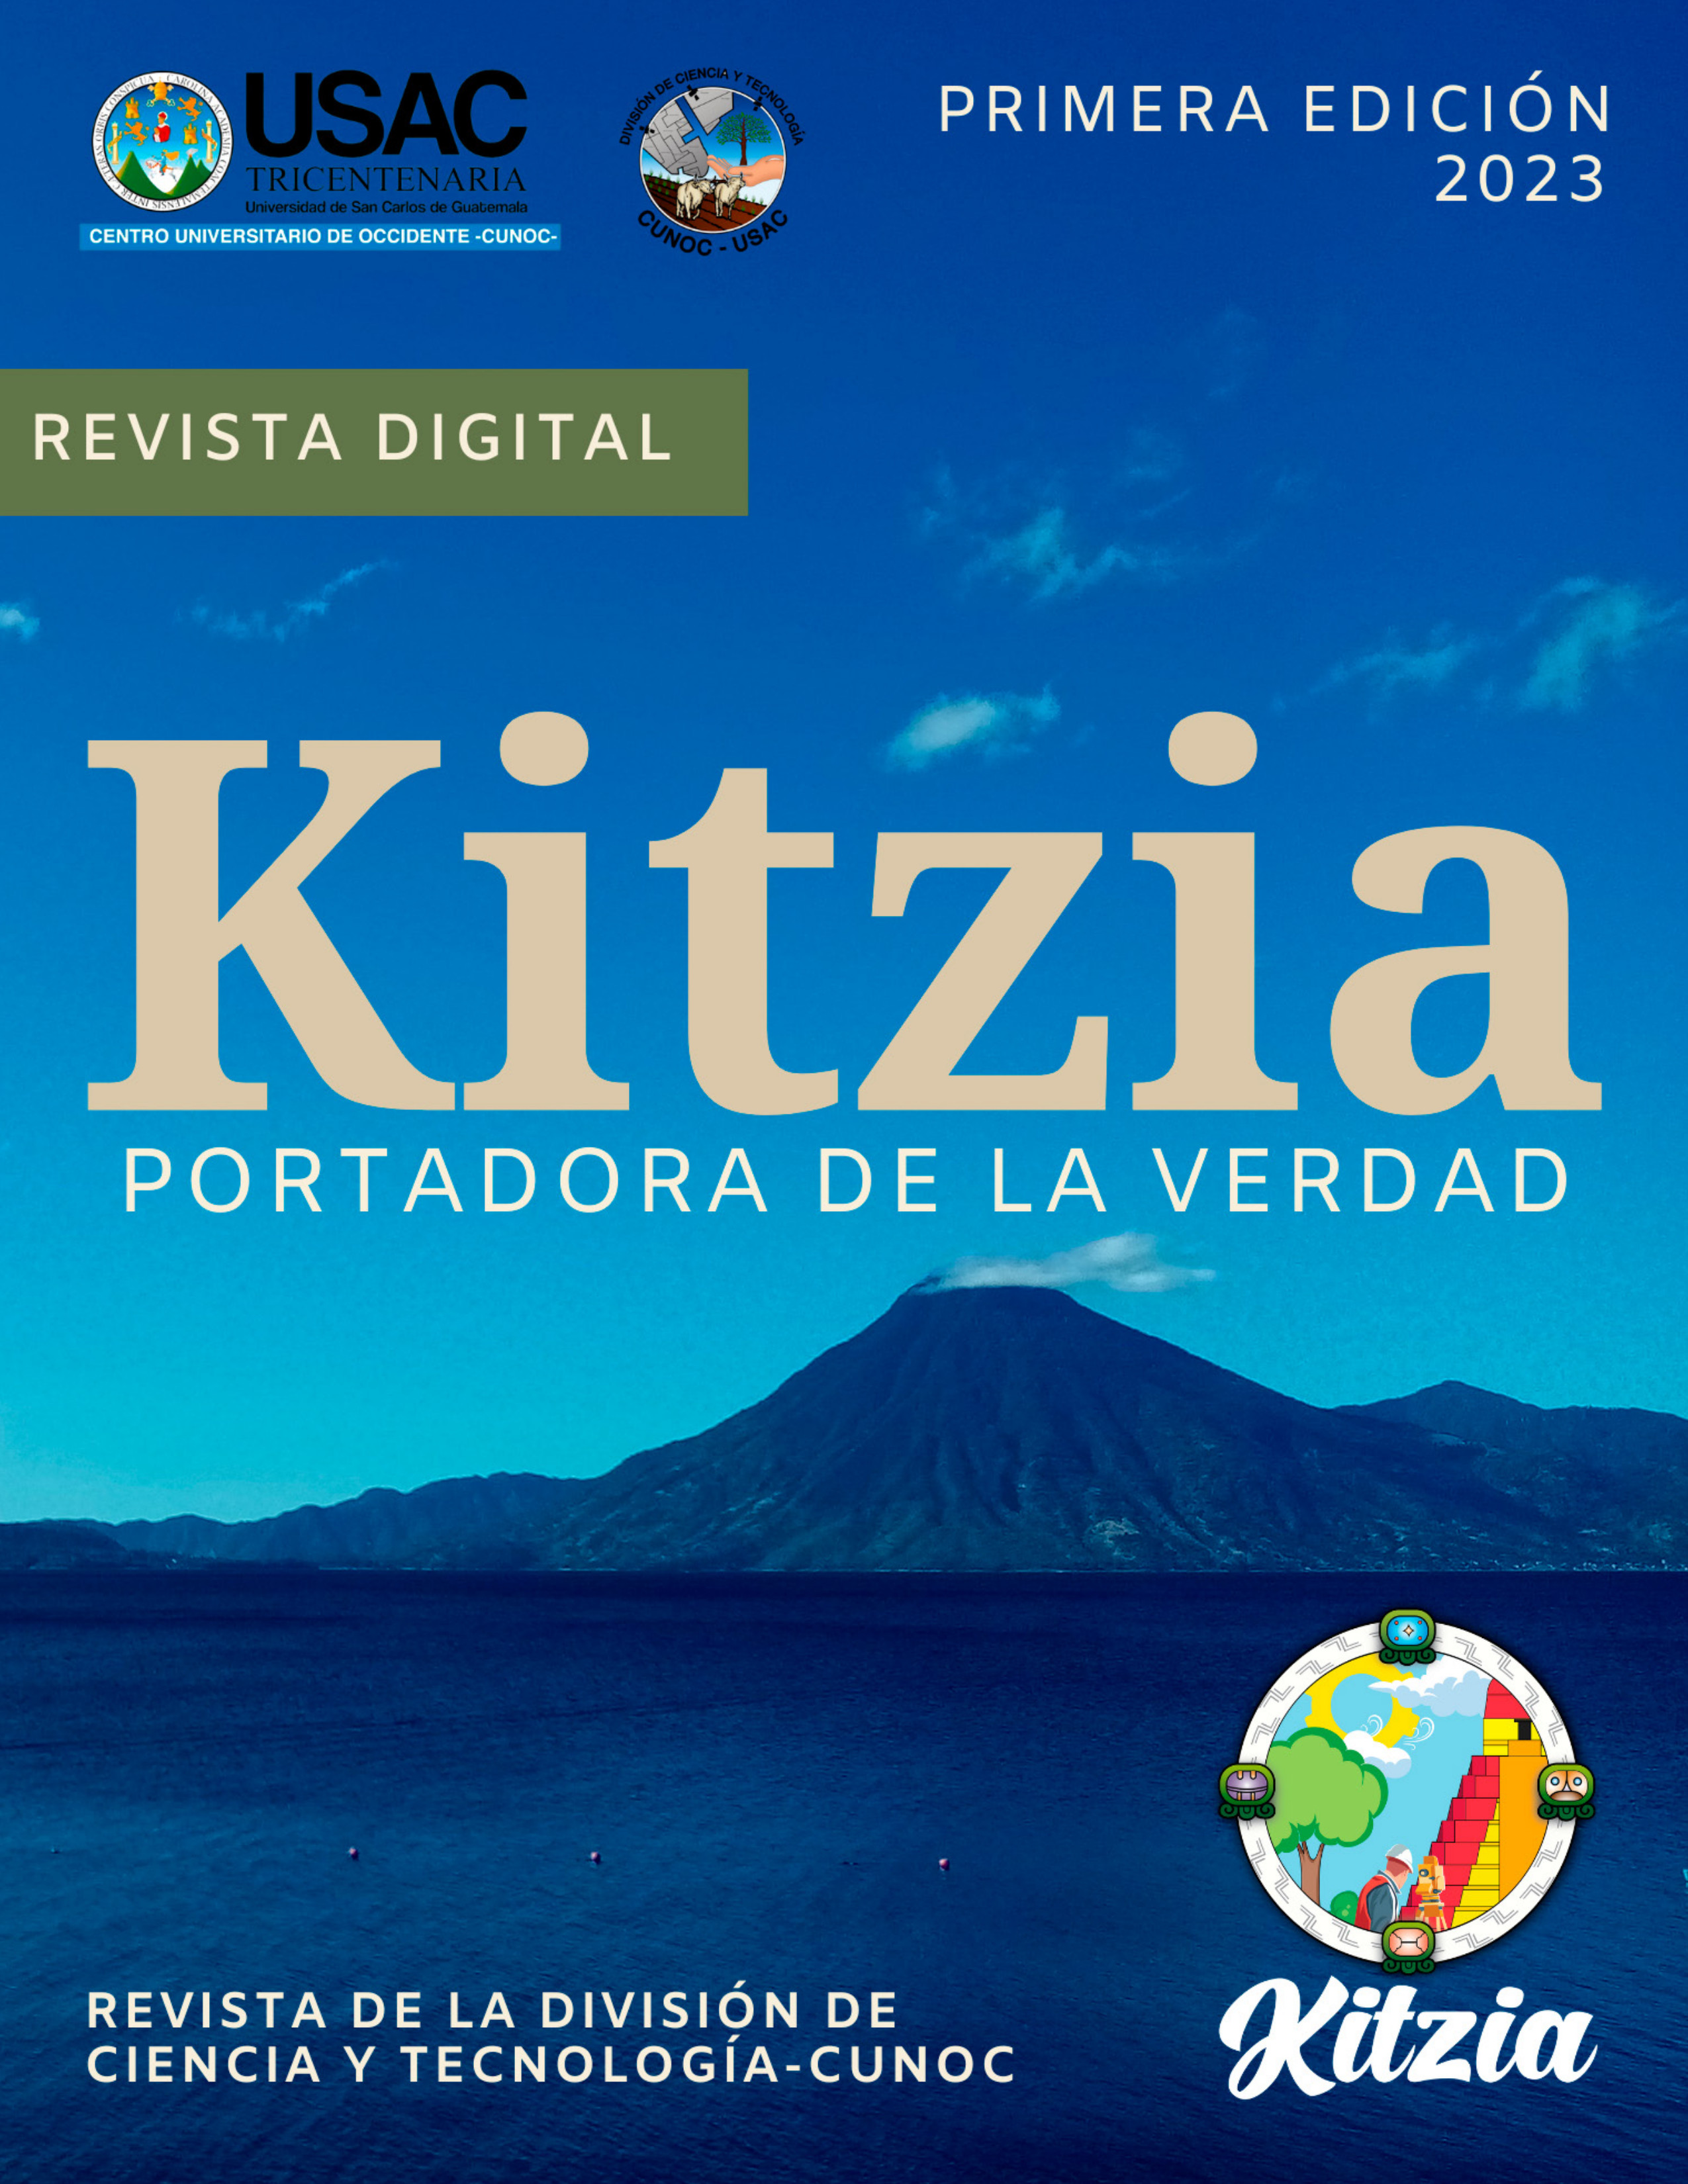 Primera Edición Kitzia